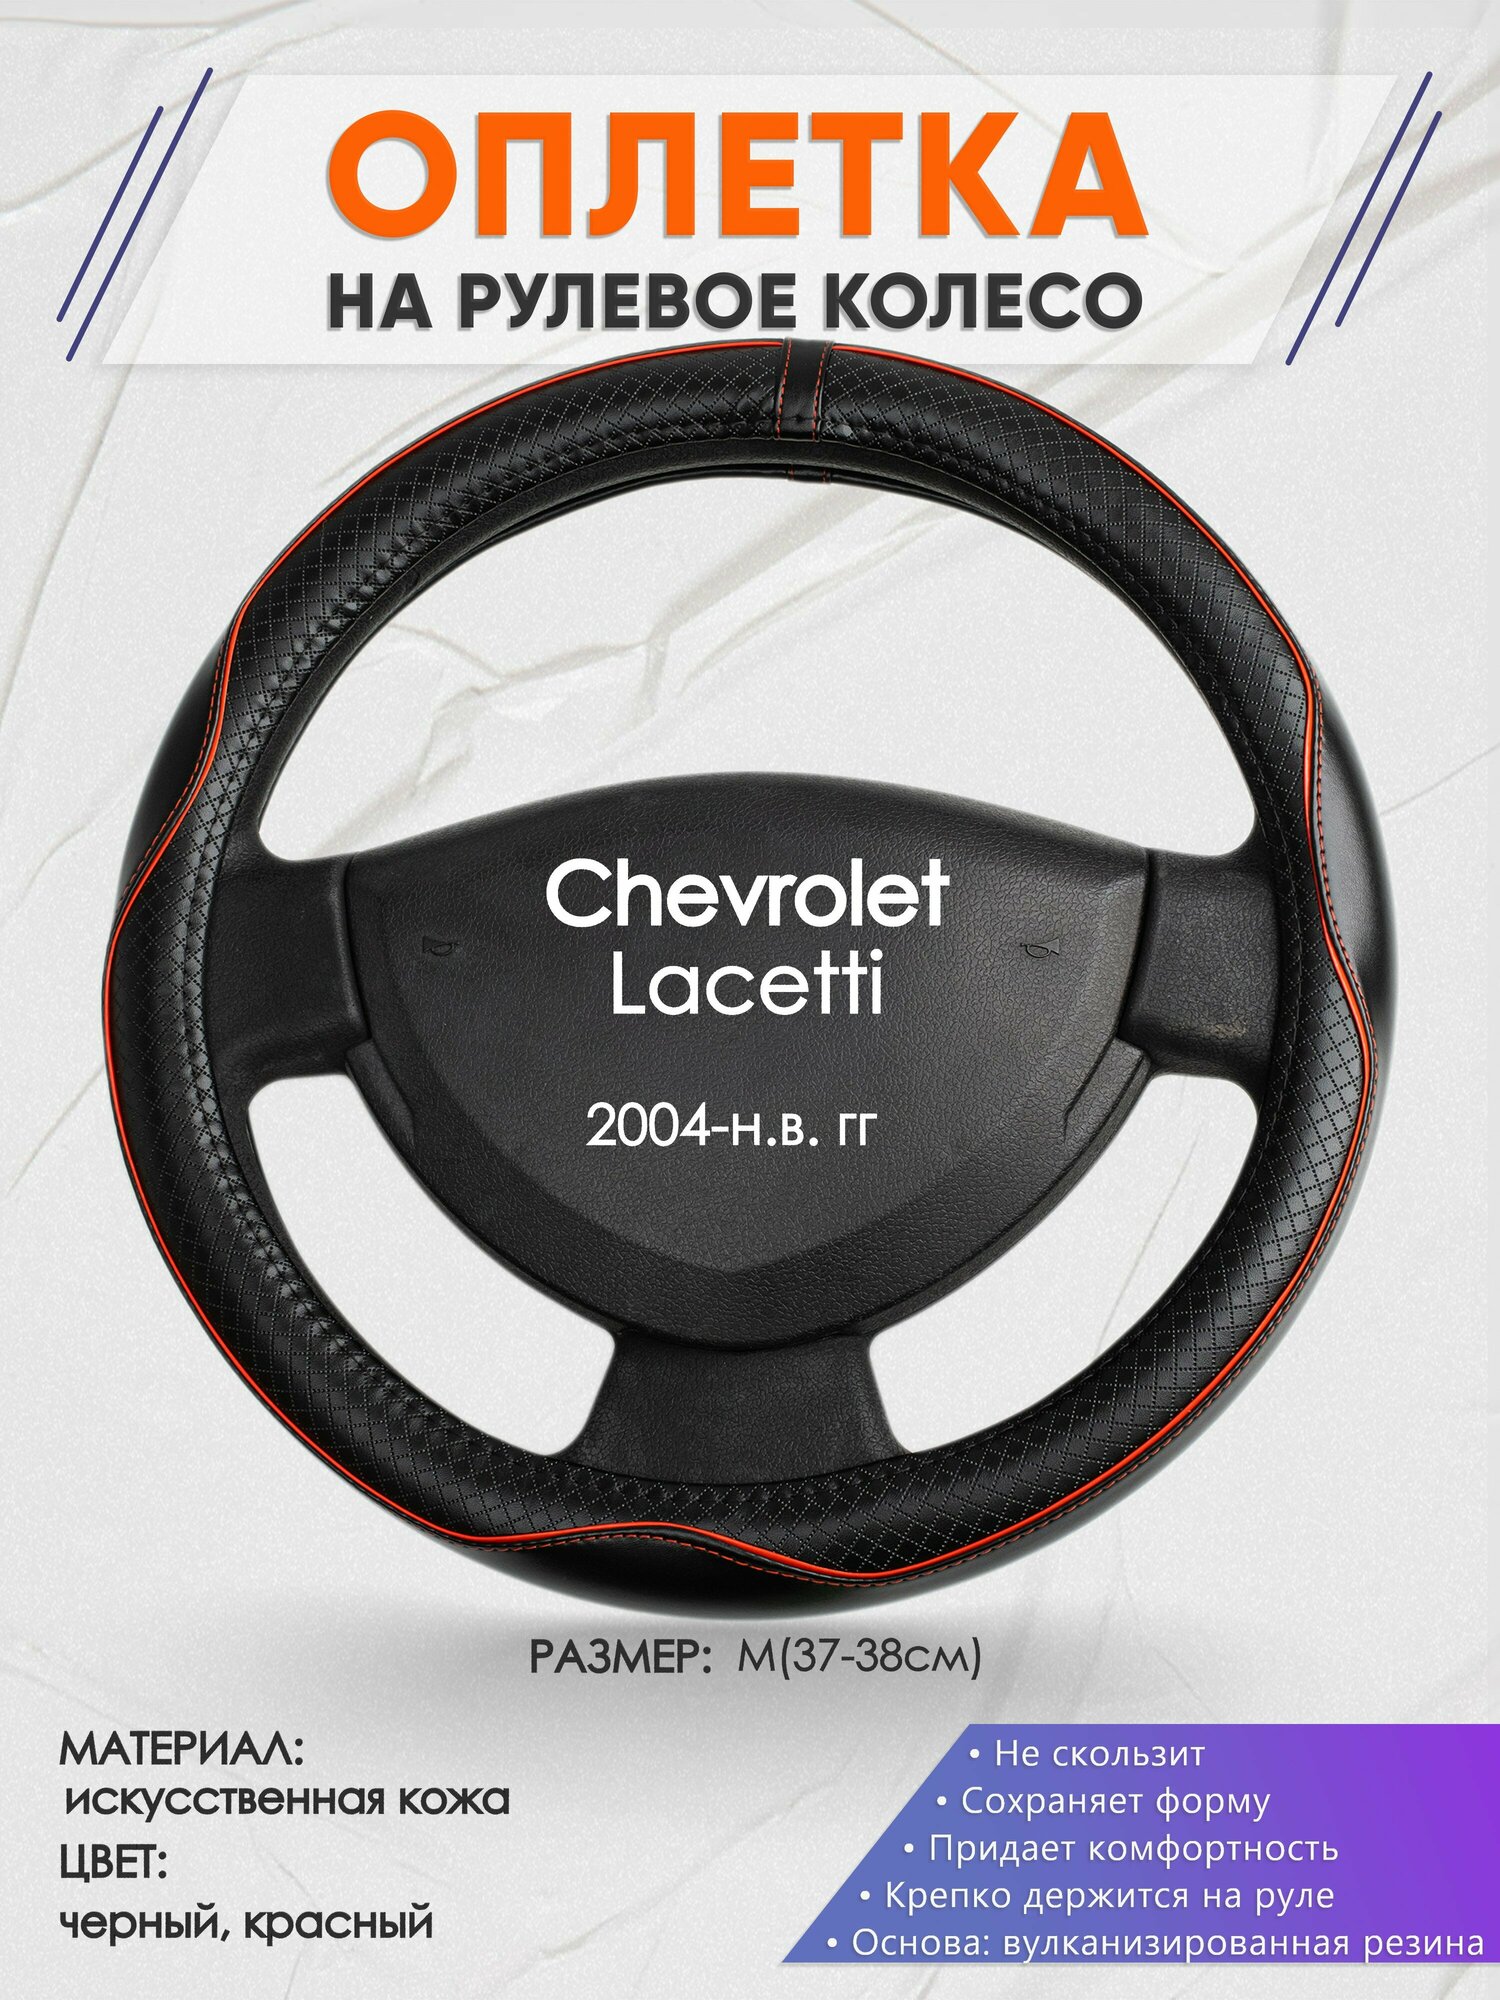 Оплетка на руль для Chevrolet Lacetti (Шевроле Лачети) 2004-н. в, M(37-38см), Искусственная кожа 86